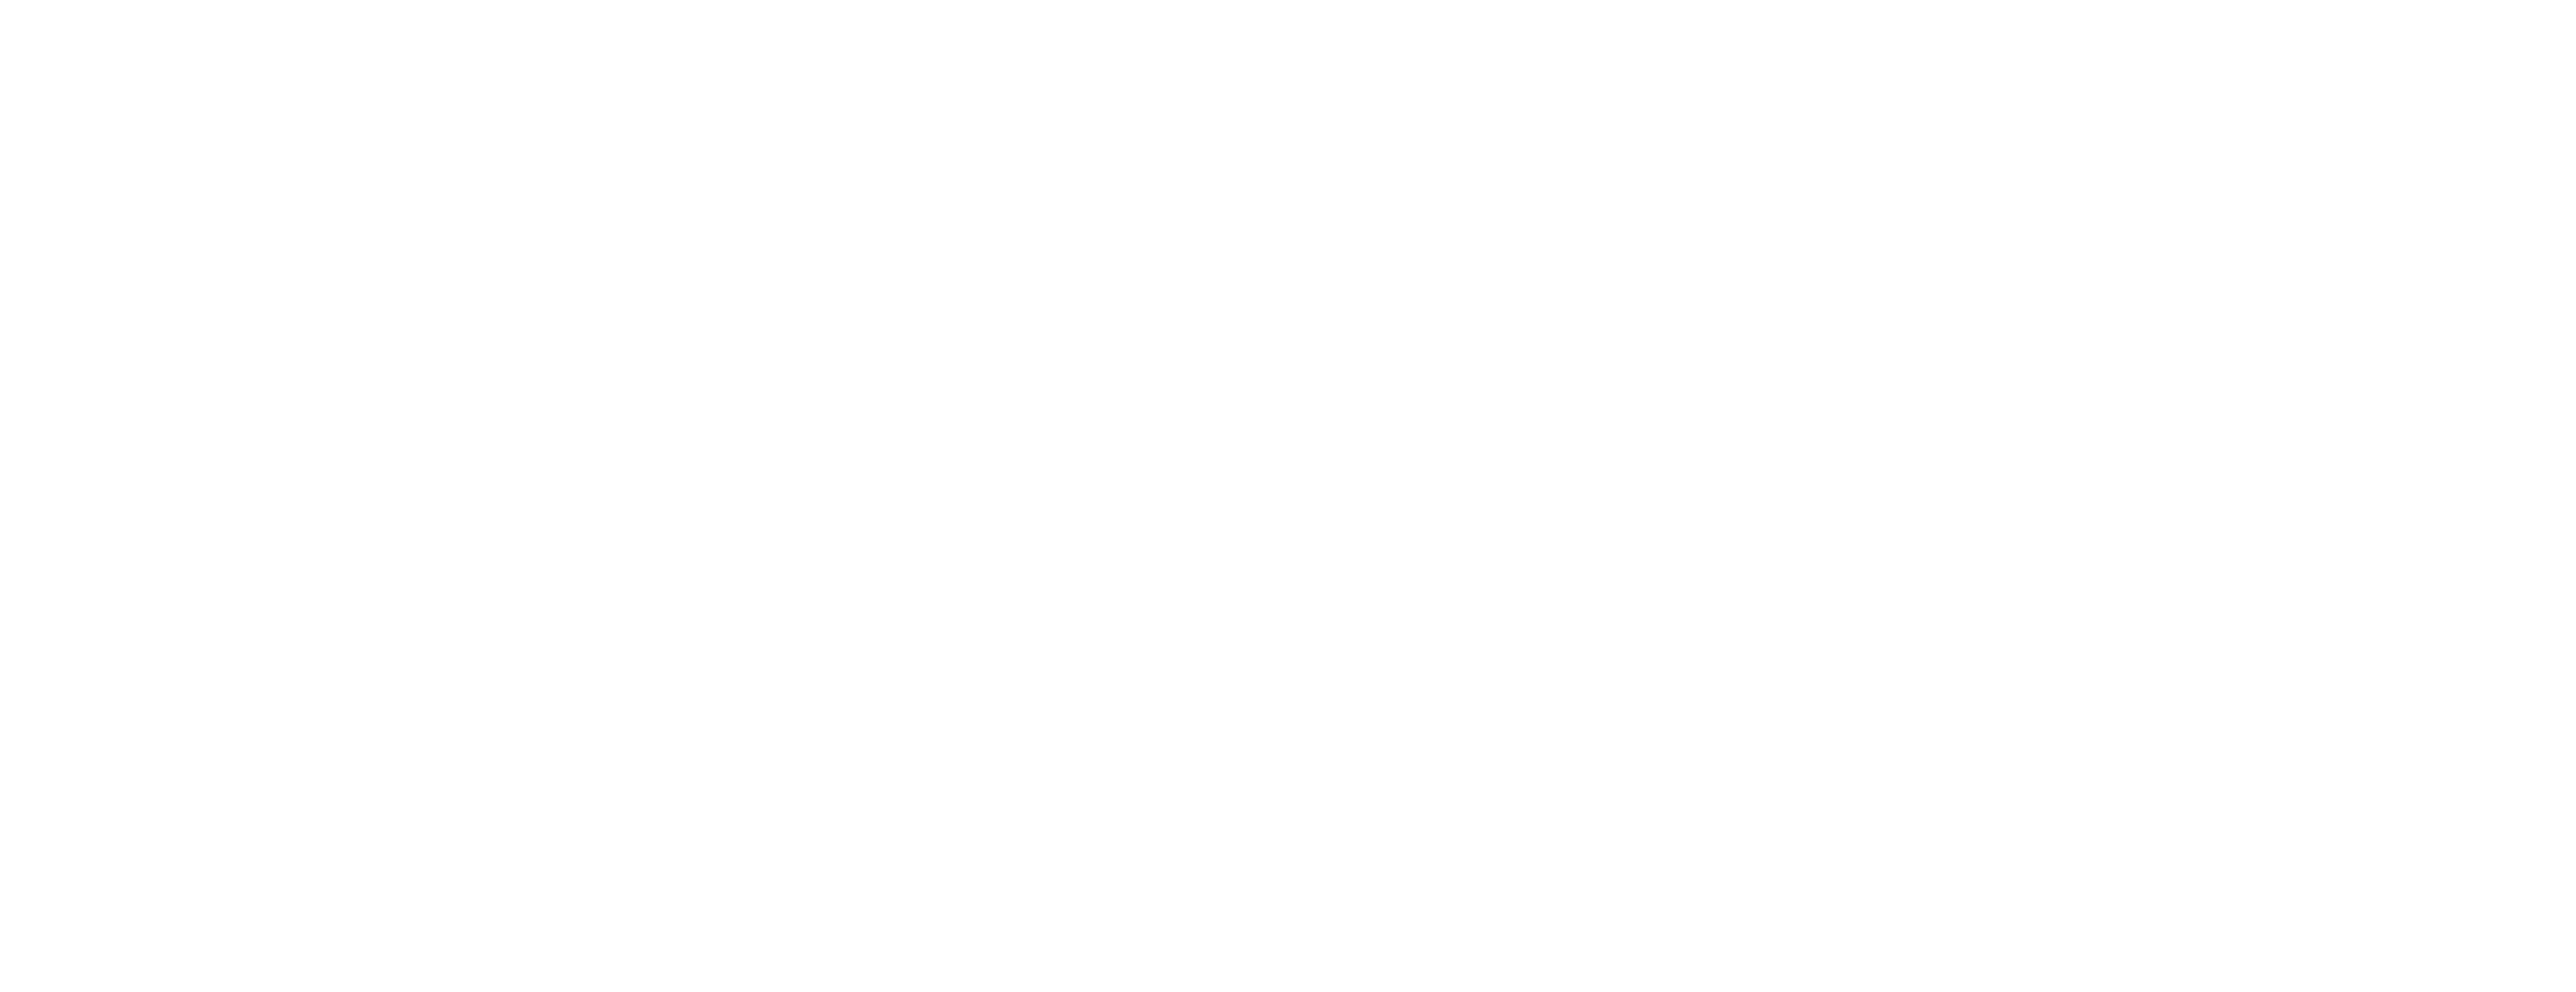 Transpotec 2024, may 8-11